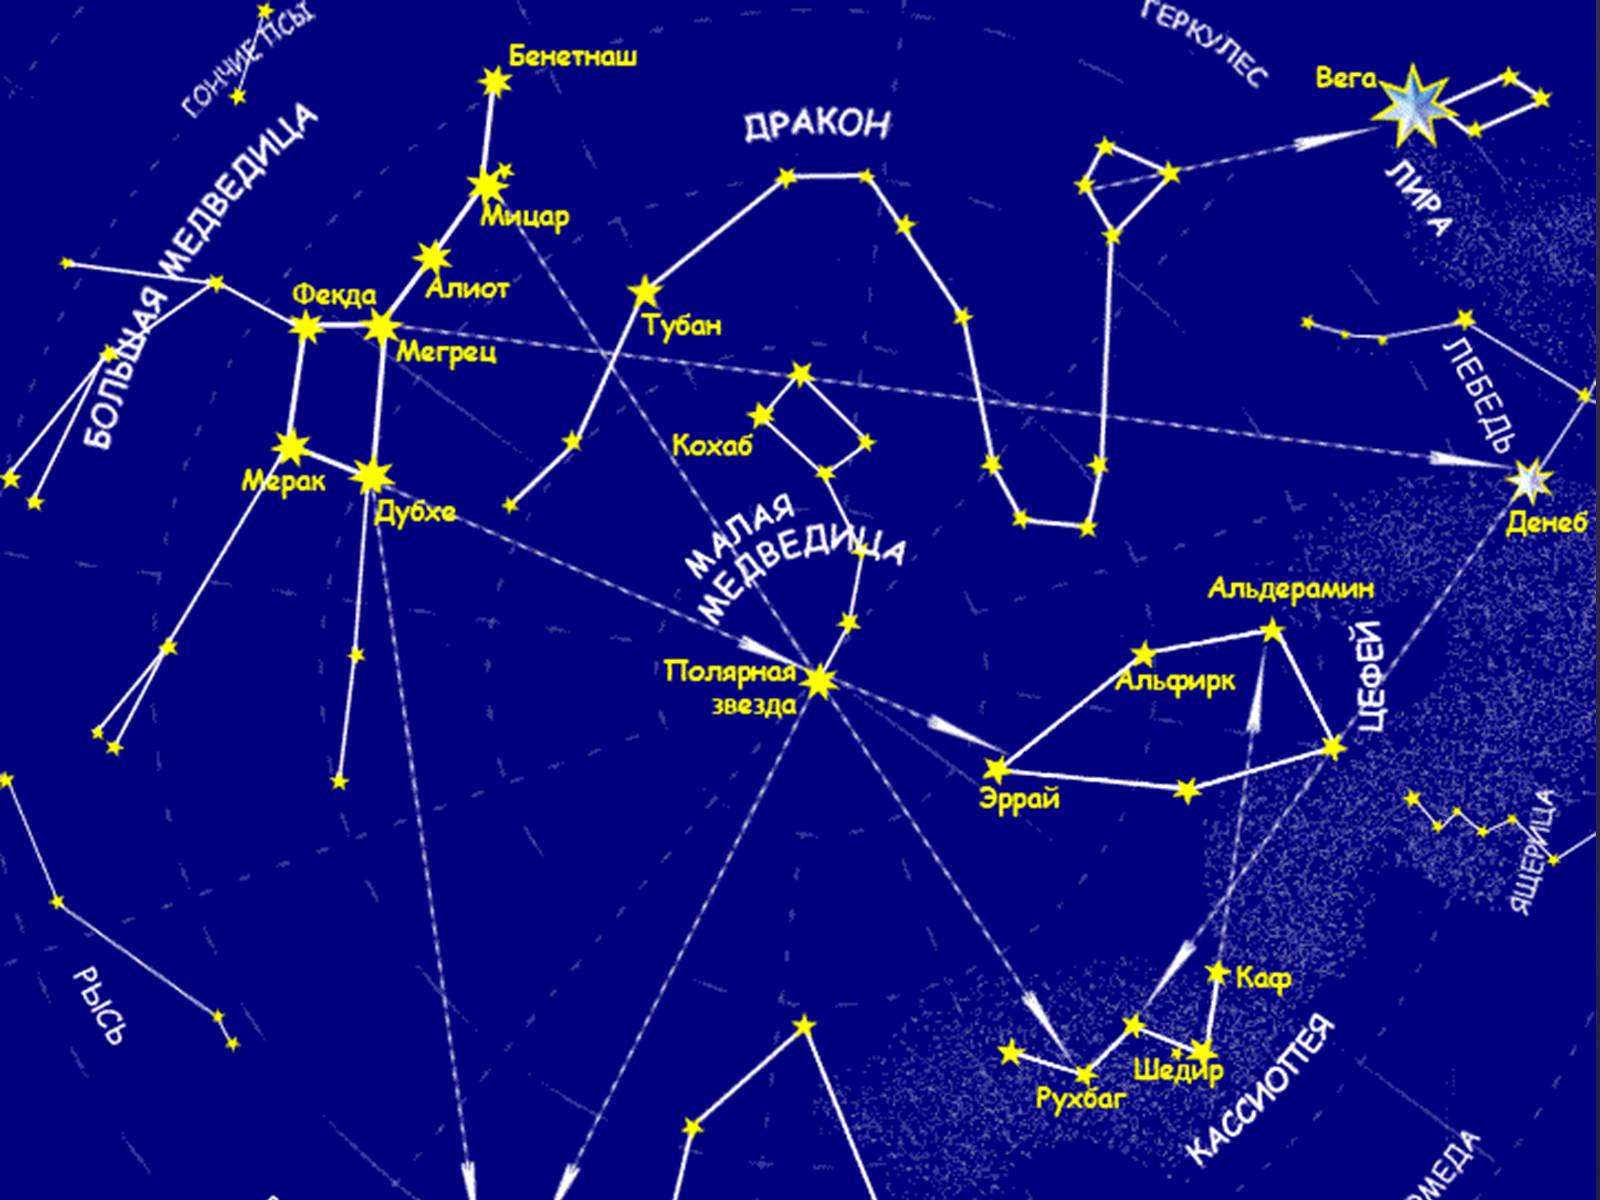 Сколько лет созвездию. Звездная карта созвездия. Карта звездного неба с названиями созвездий большая Медведица. Карта звёздного неба Северное полушарие большая Медведица. Околополярные незаходящие созвездия.